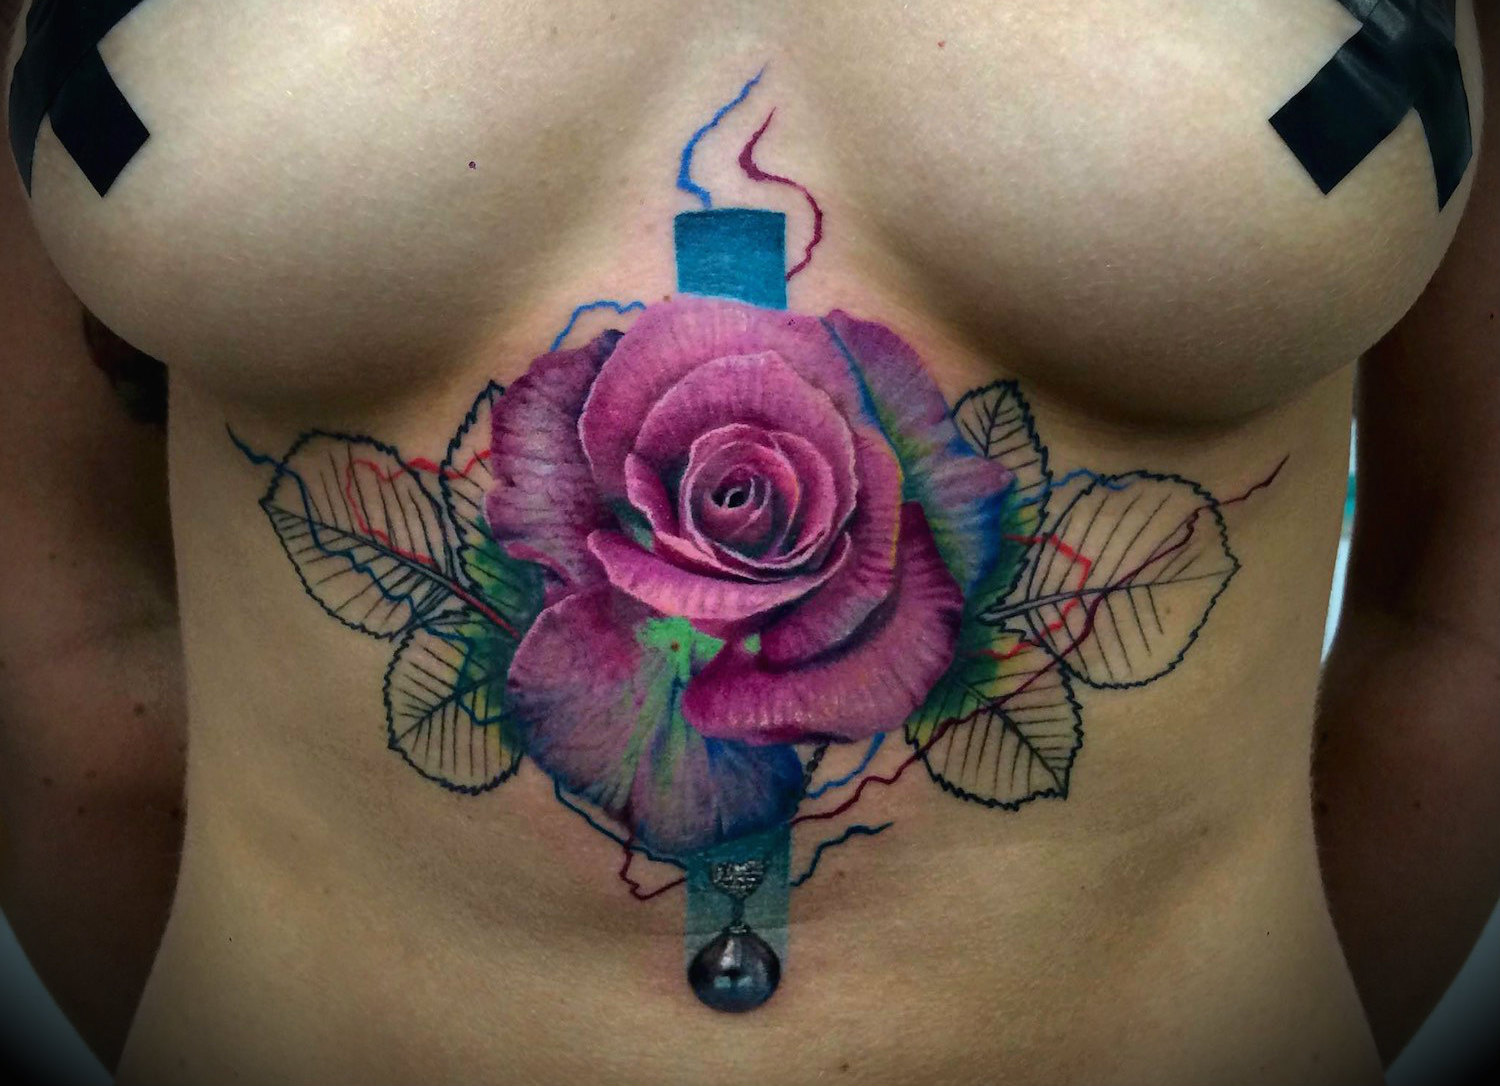 Dzikson Wildstyle pop art rose tattoo